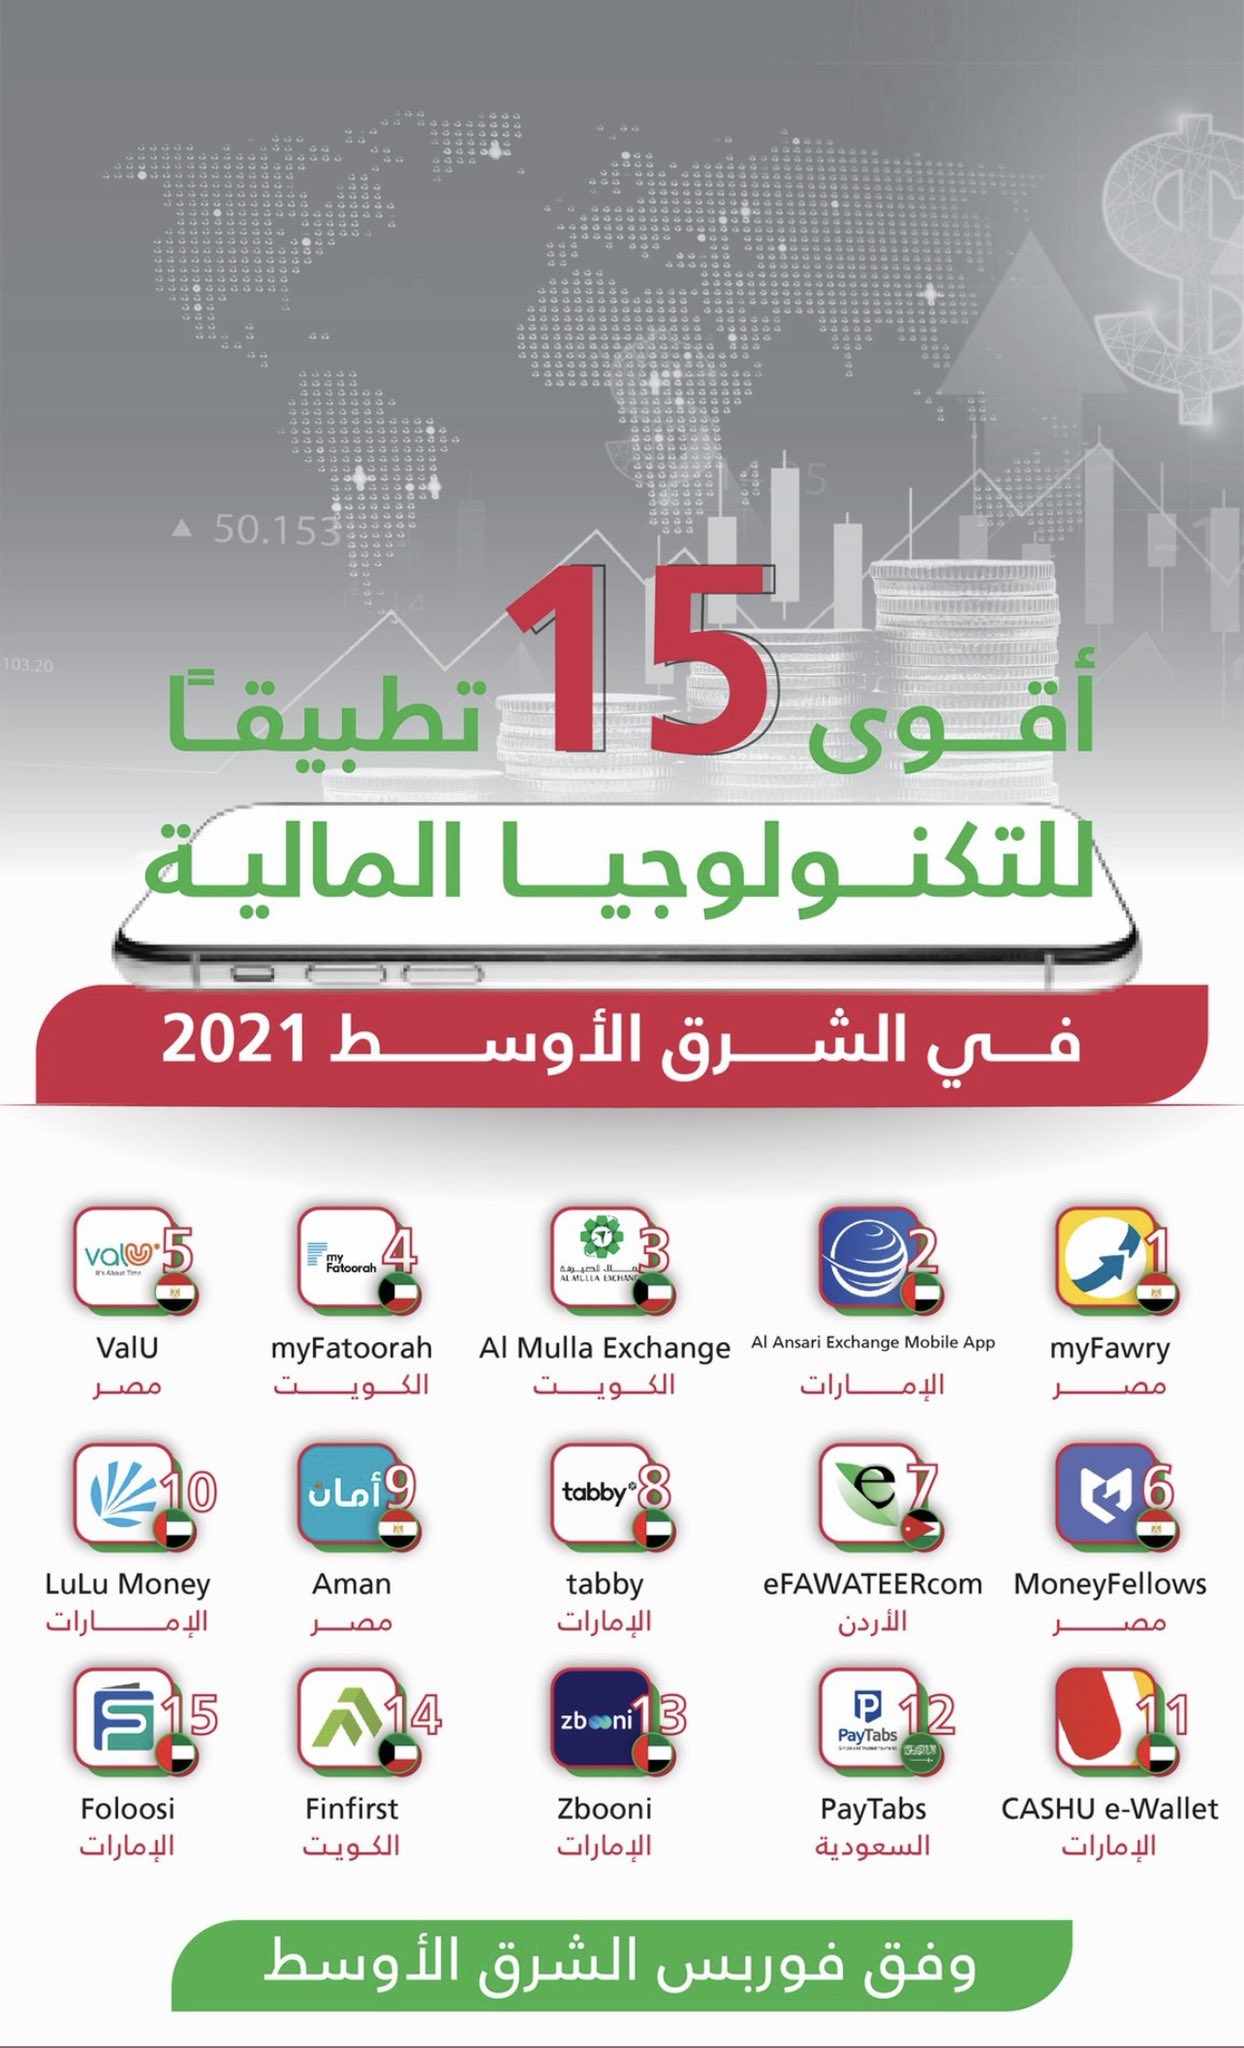 تطبيق ماي فاتوره الكويتي يحتل المركز الثالث في قائمة أقوى 15 تطبيقًا للتكنولوجيا المالية في الشرق الأوسط 2021 الصادر من فوربس